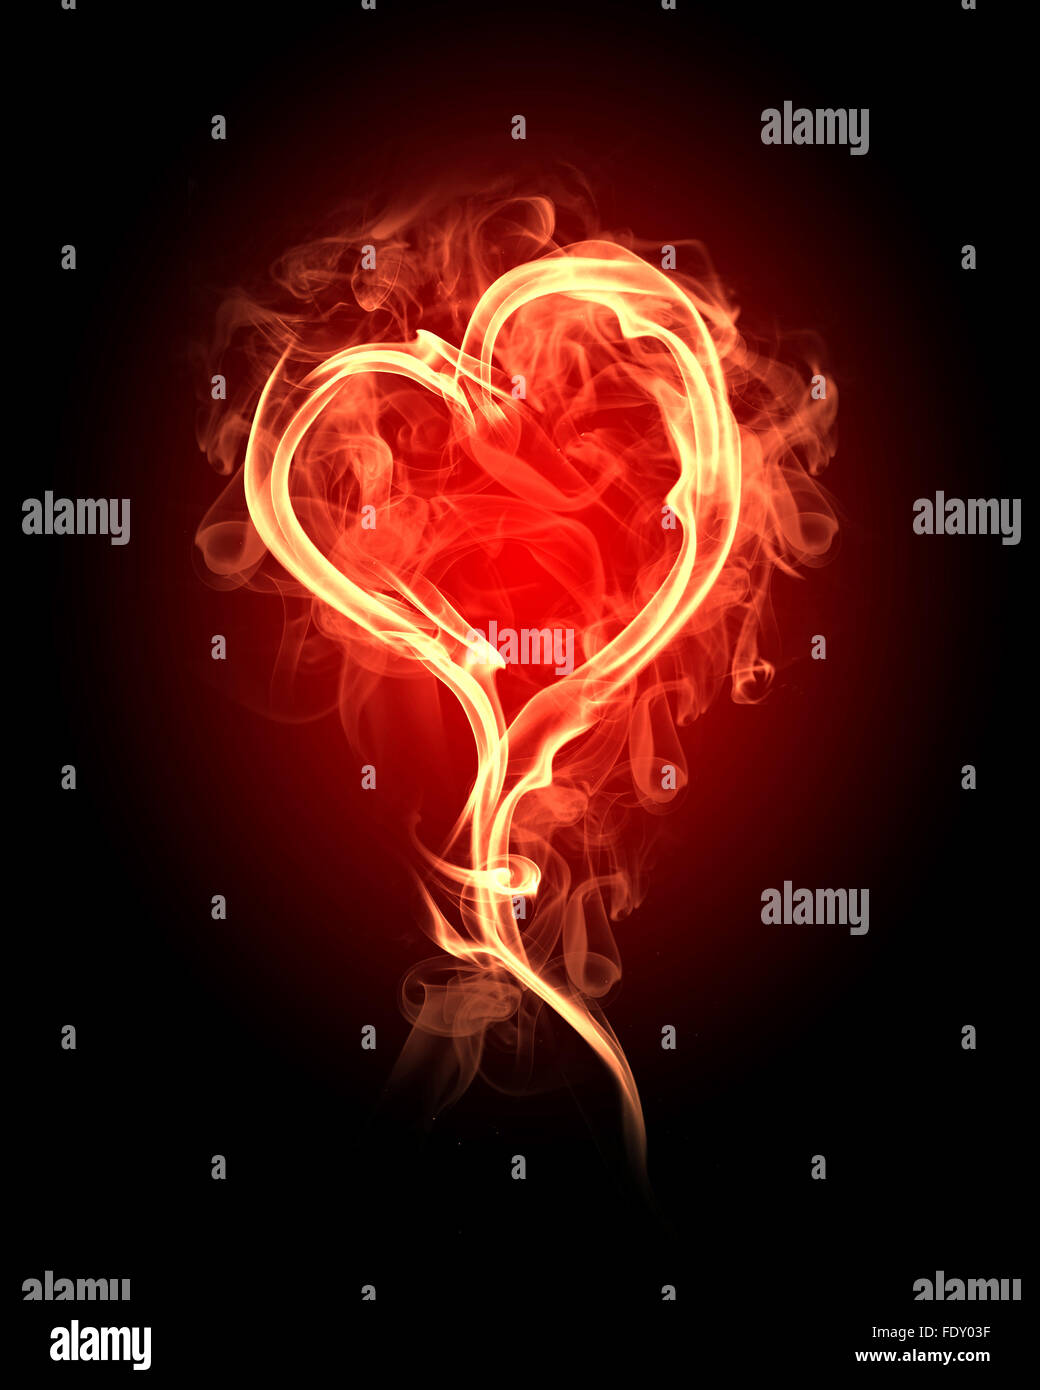 Coeur brûlant avec des flammes sur un fond sombre Banque D'Images